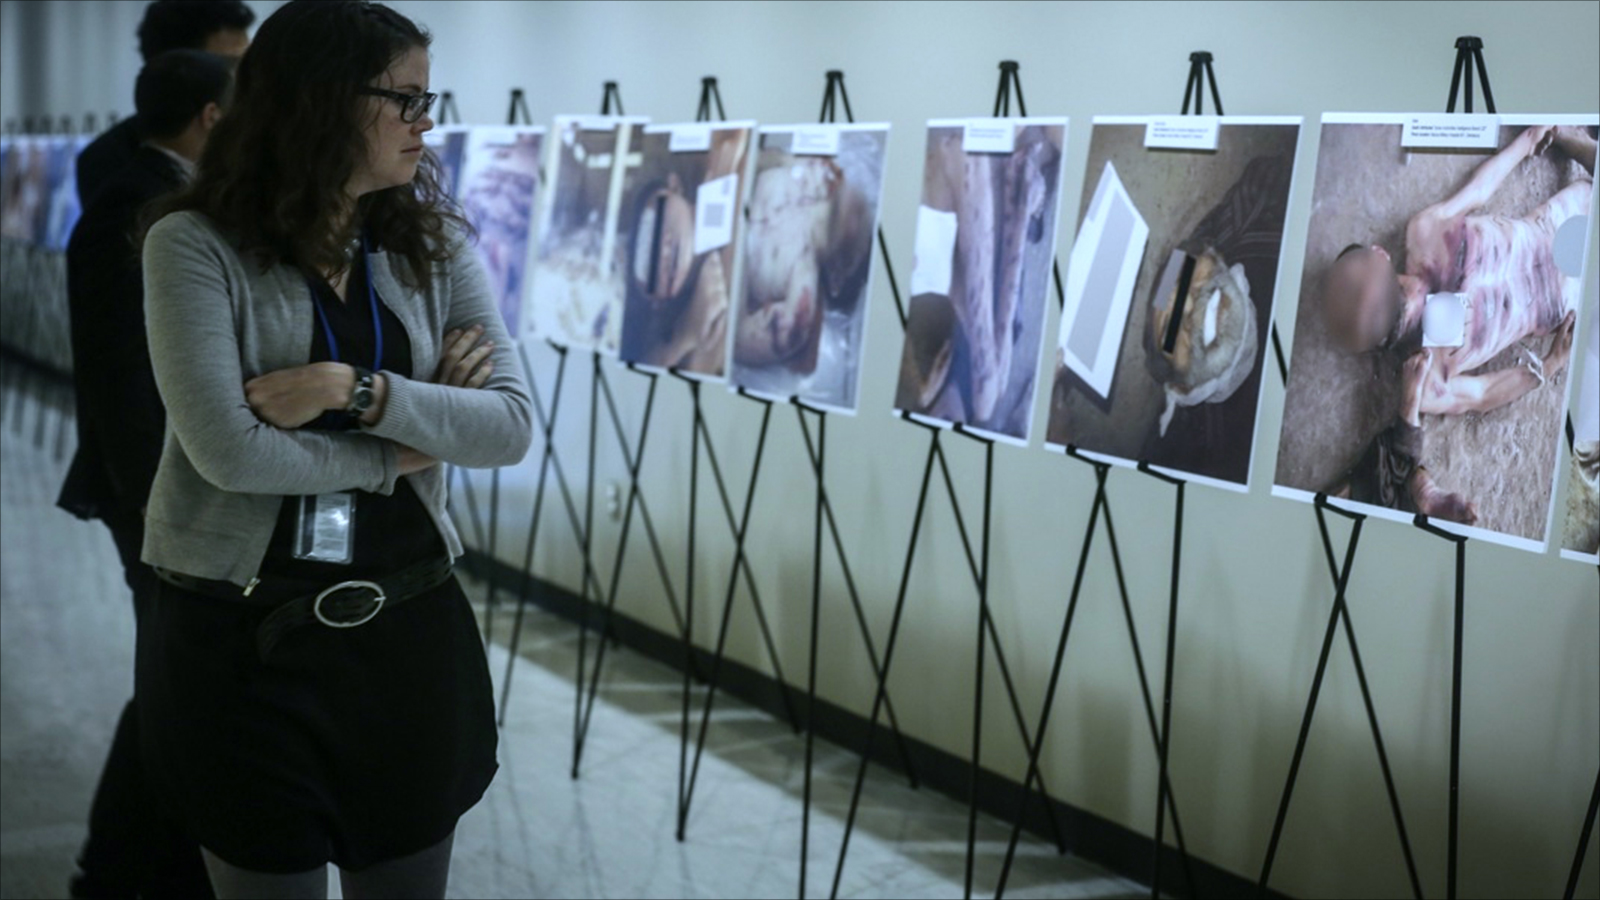 الأمم المتحدة عرضت في مقرها مجموعة من الصور المسربة لضحايا التعذيب في السجون السورية (الجزيرة)